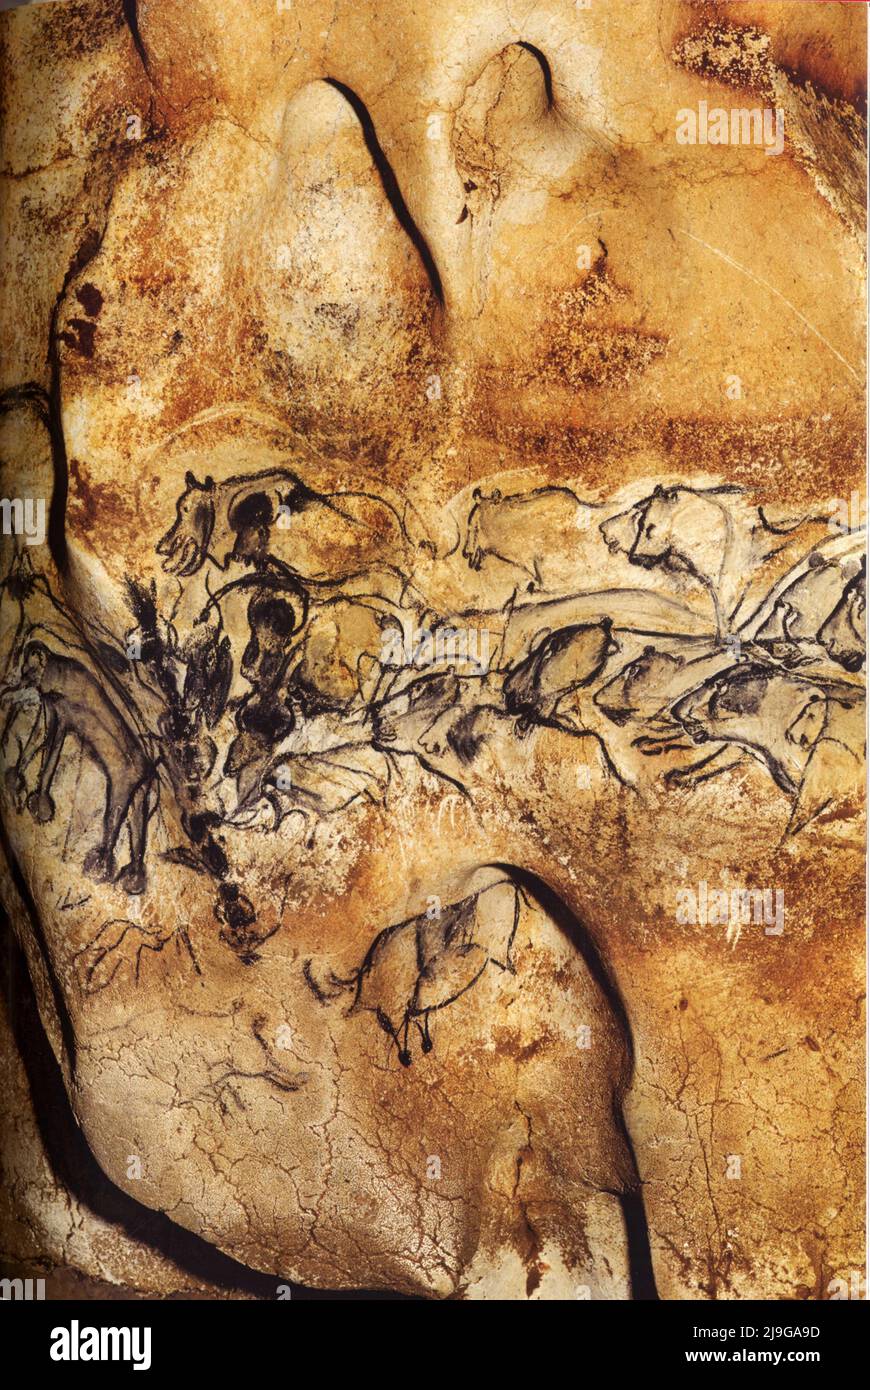 36000 ans avant J.C. La grotte Chauvet, prédateurs féroces, panneau des leons Foto Stock